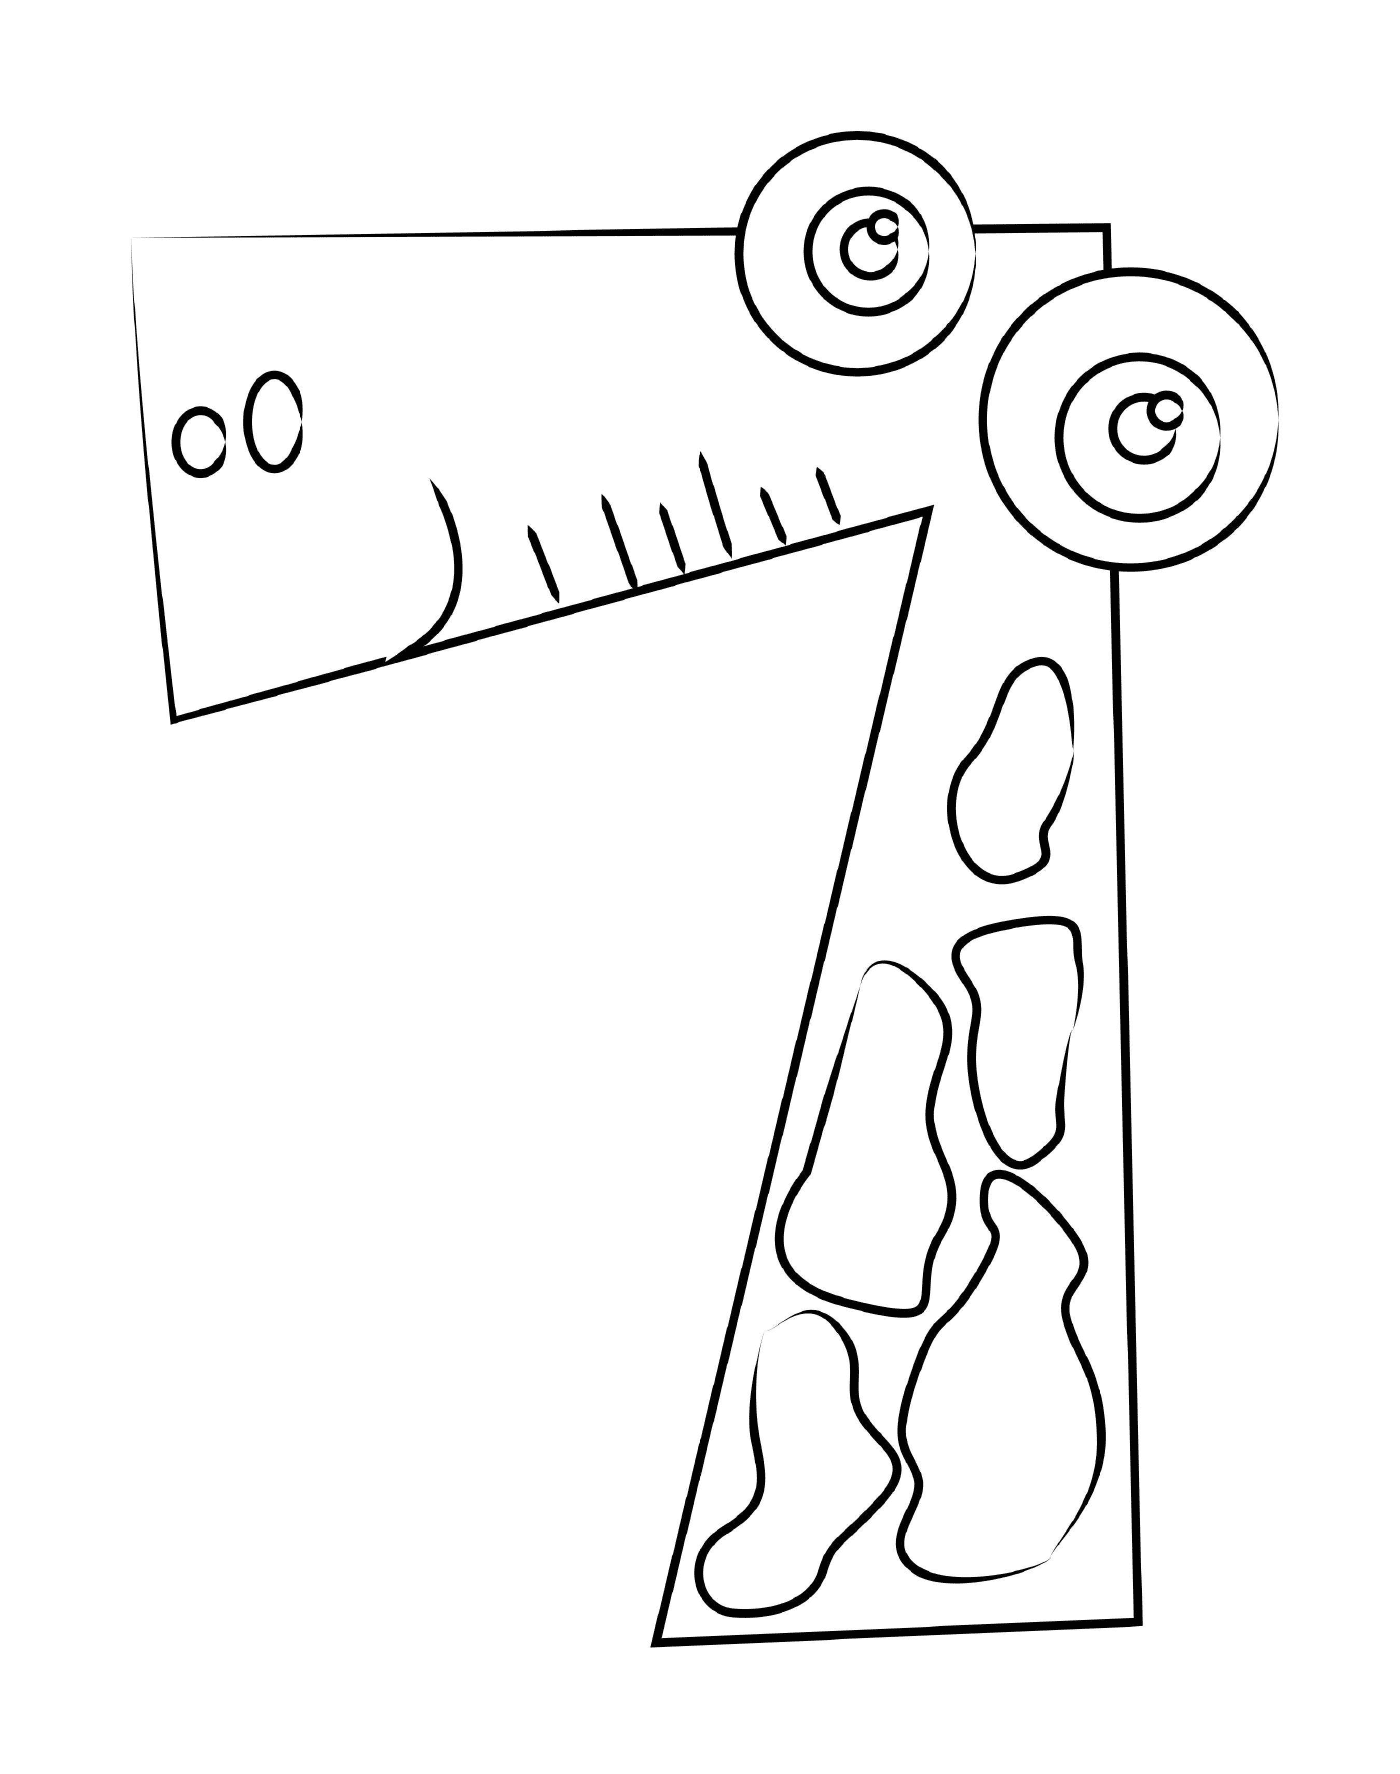  Figure 7 for children 